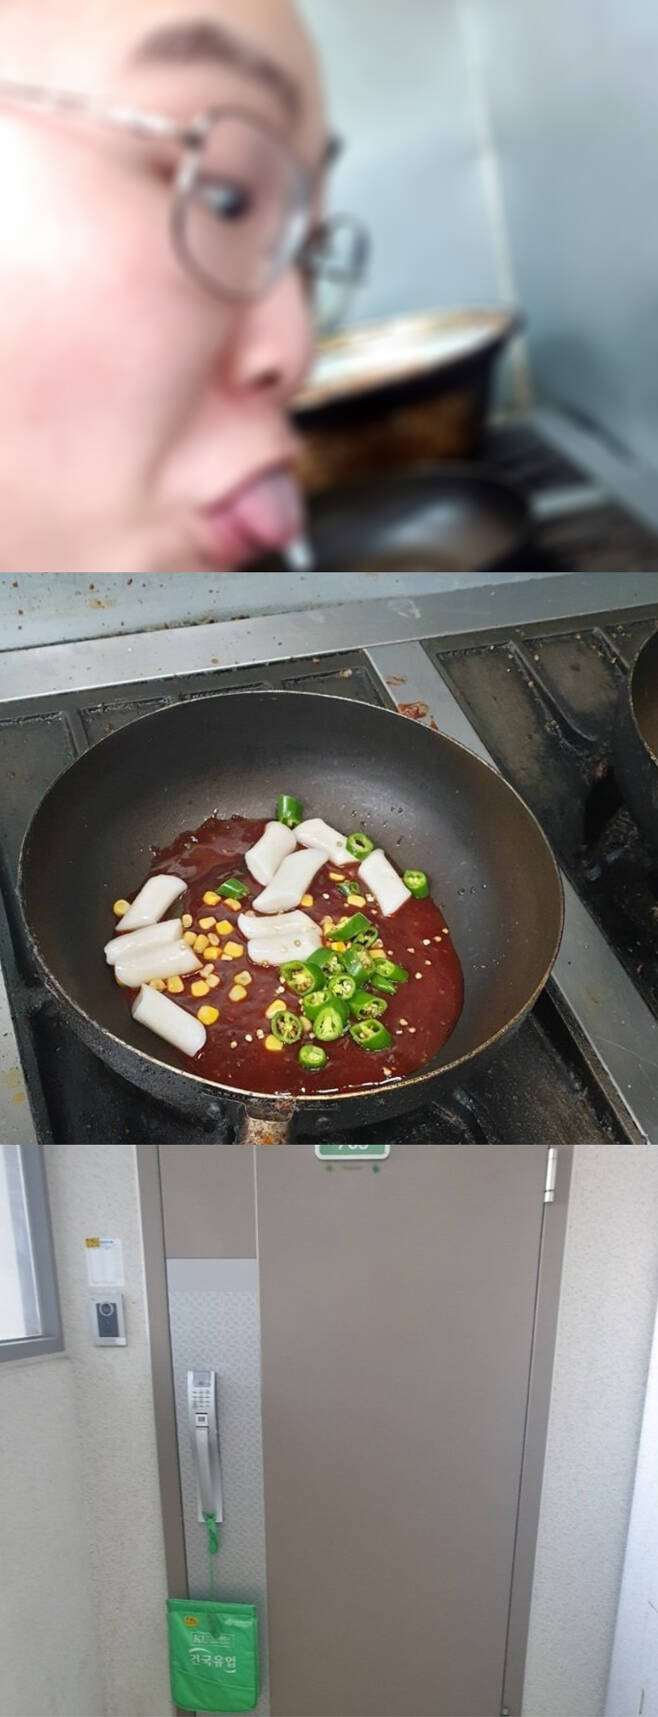 치킨집에서 근무하는 한 일베 회원이 여성이 주문한 음식에 침을 뱉는 사진을 올려 공분이 일고 있다. 일베 홈페이지